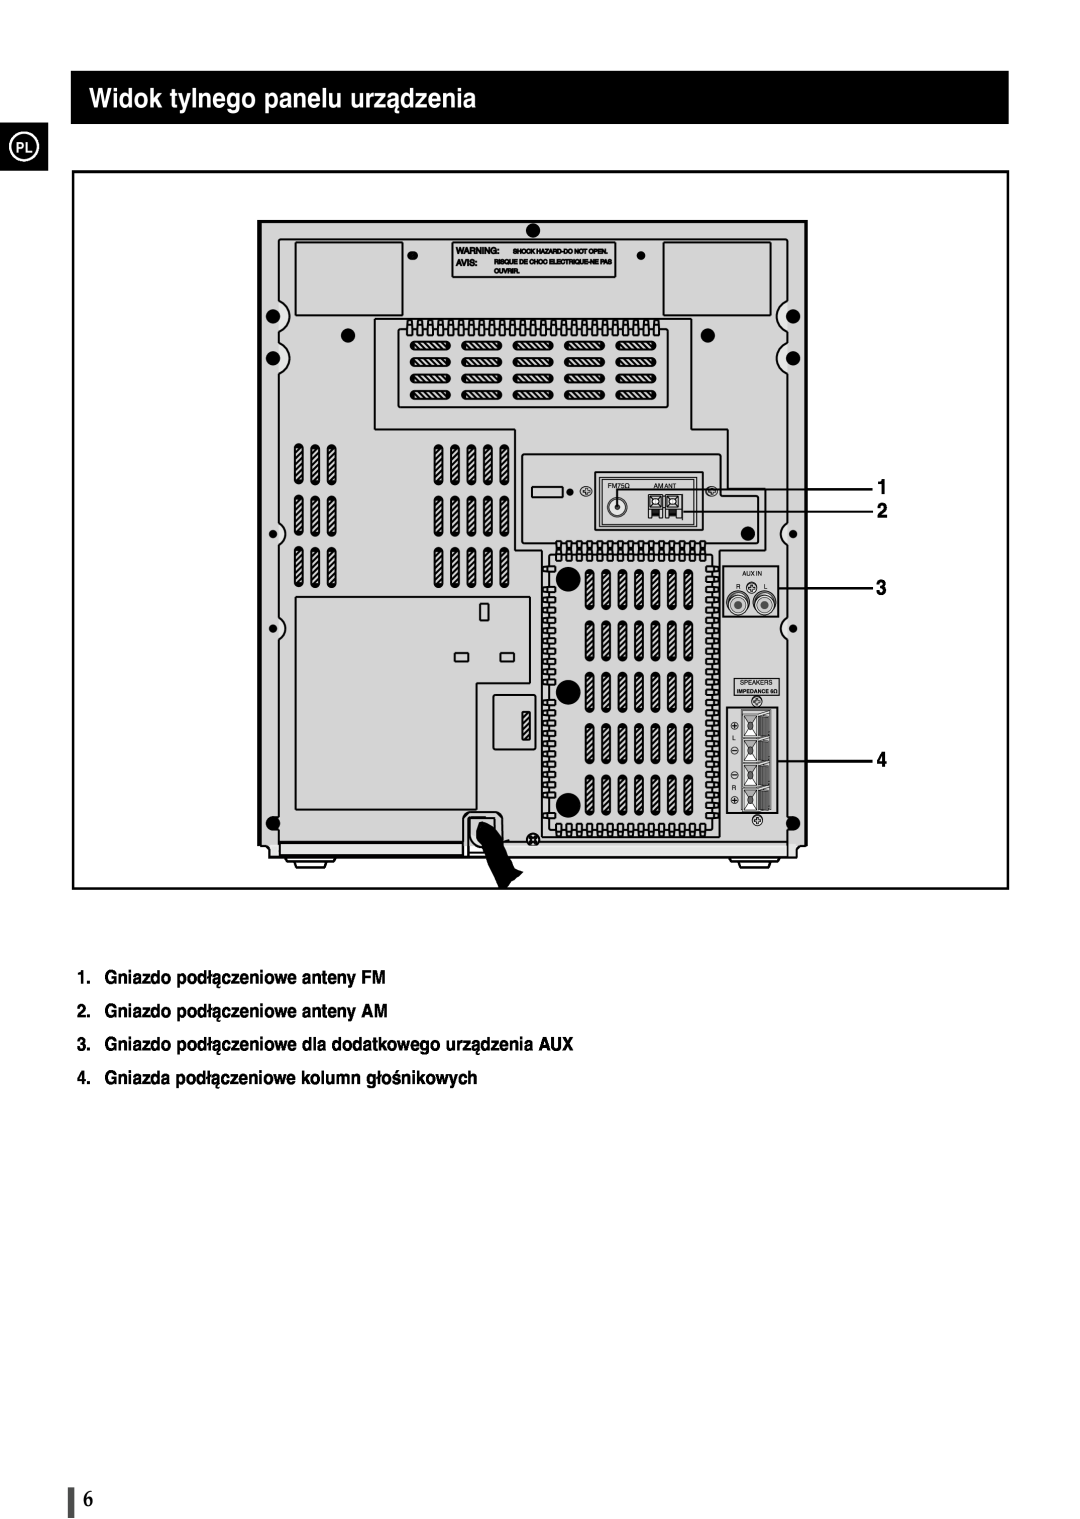 Samsung MAX-B420, B450 Widok tylnego panelu urz¹dzenia, Gniazdo podłączeniowe anteny FM, Gniazdo podłączeniowe anteny AM 